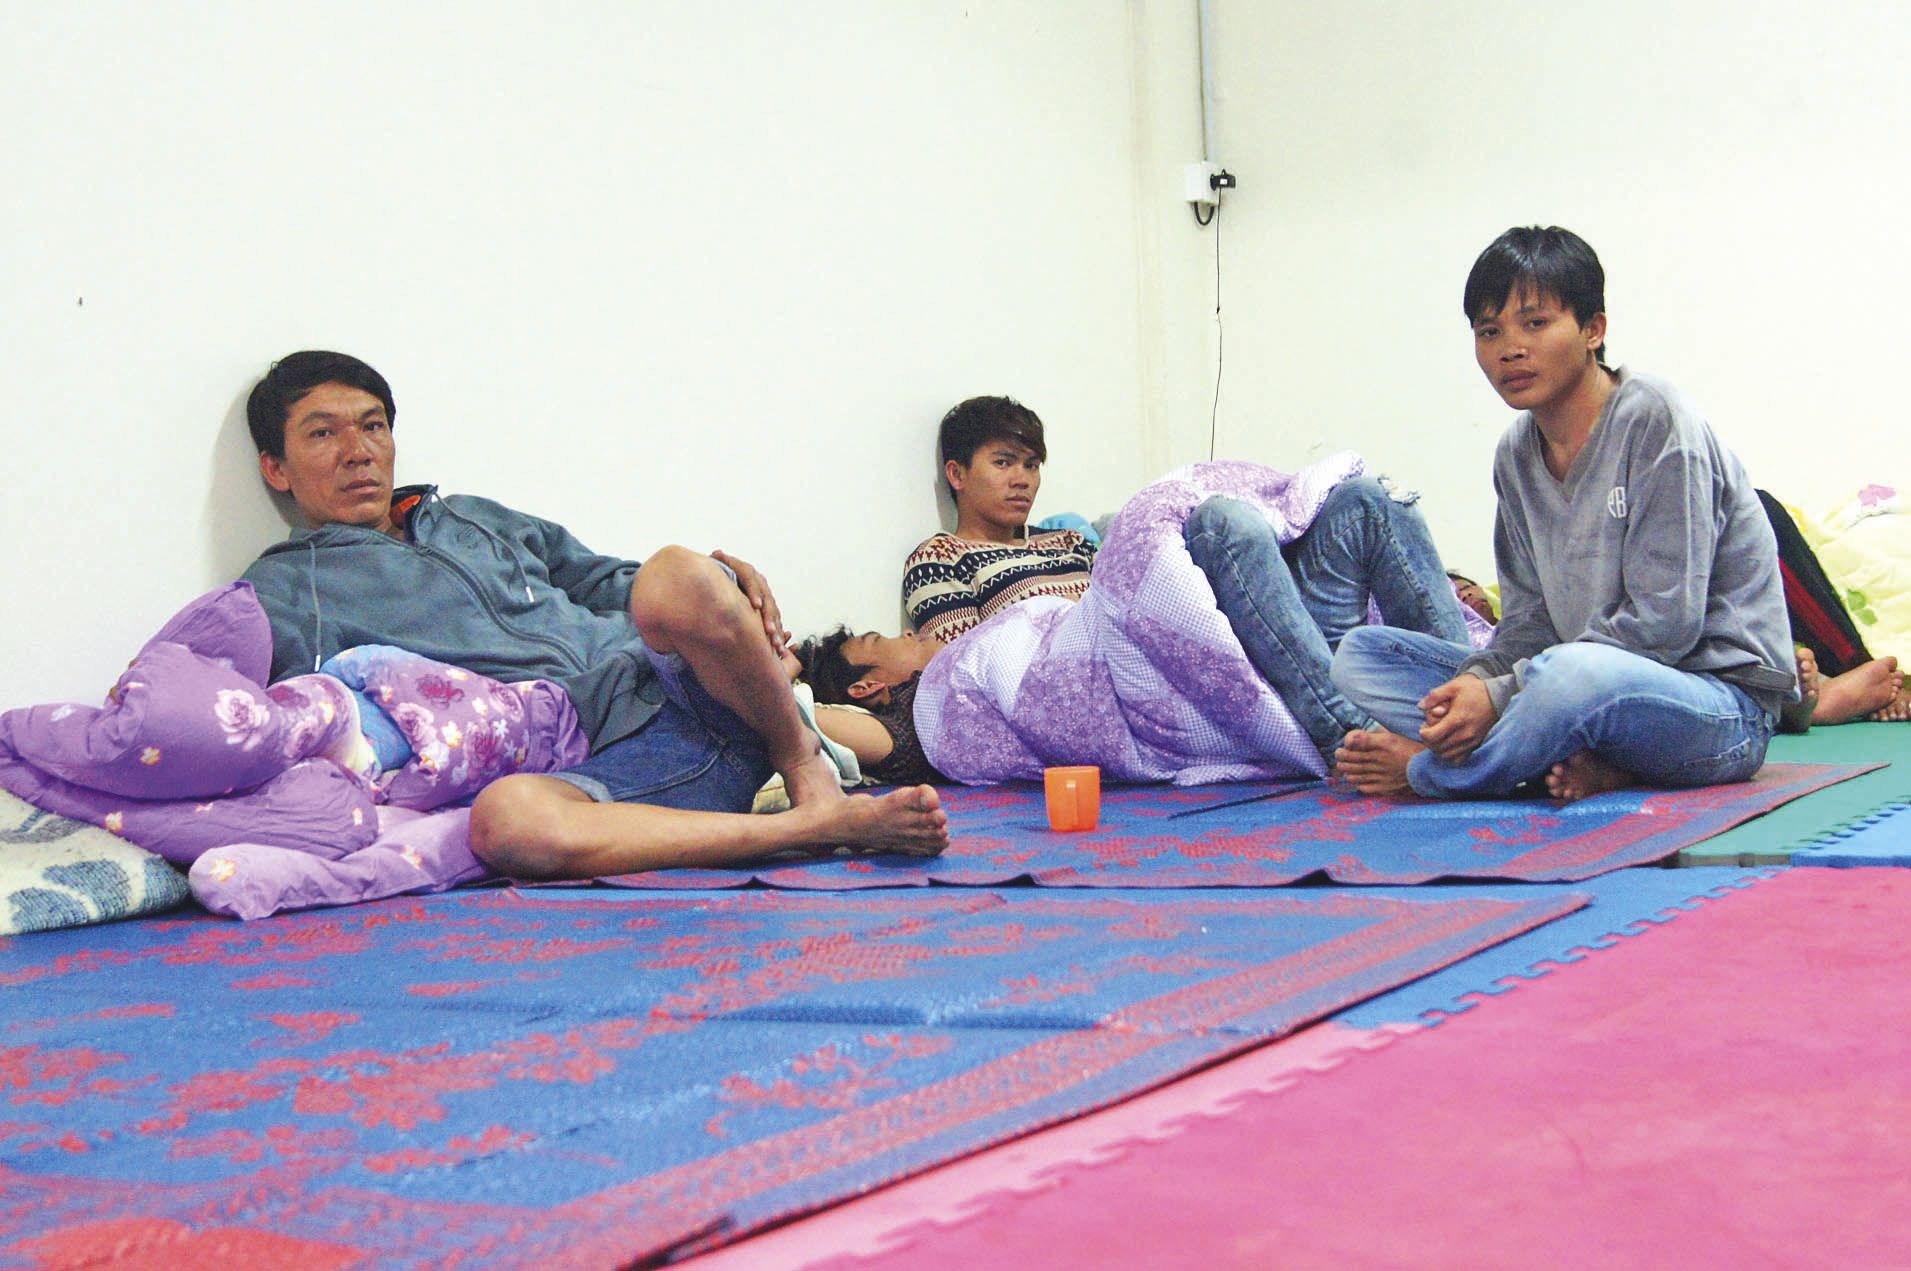 Le foyer de l'Amicale vietnamienne accueille dix pêcheurs du navire arraisonné.